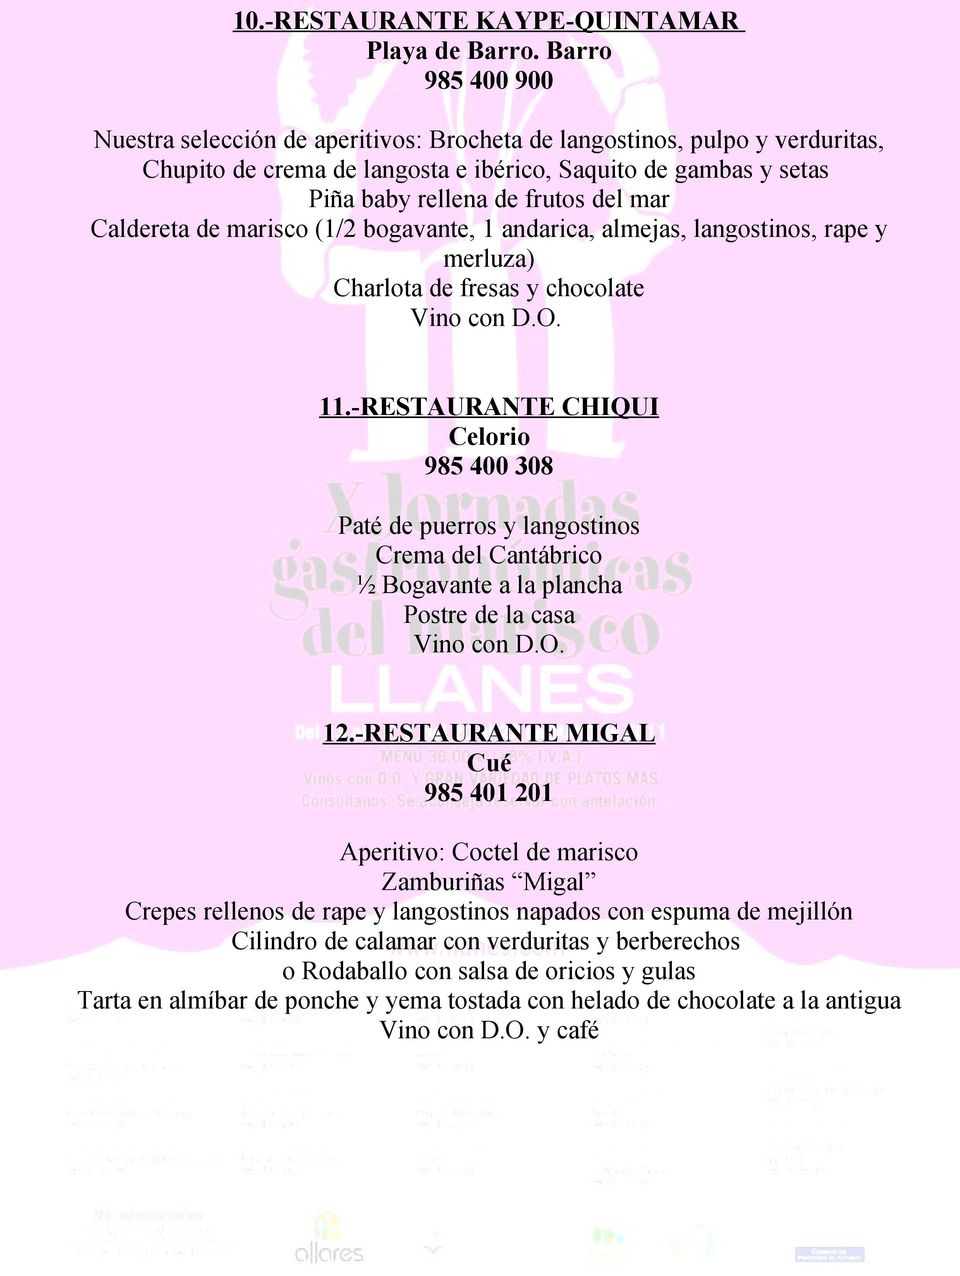 Caldereta de marisco (1/2 bogavante, 1 andarica, almejas, langostinos, rape y merluza) Charlota de fresas y chocolate 11.